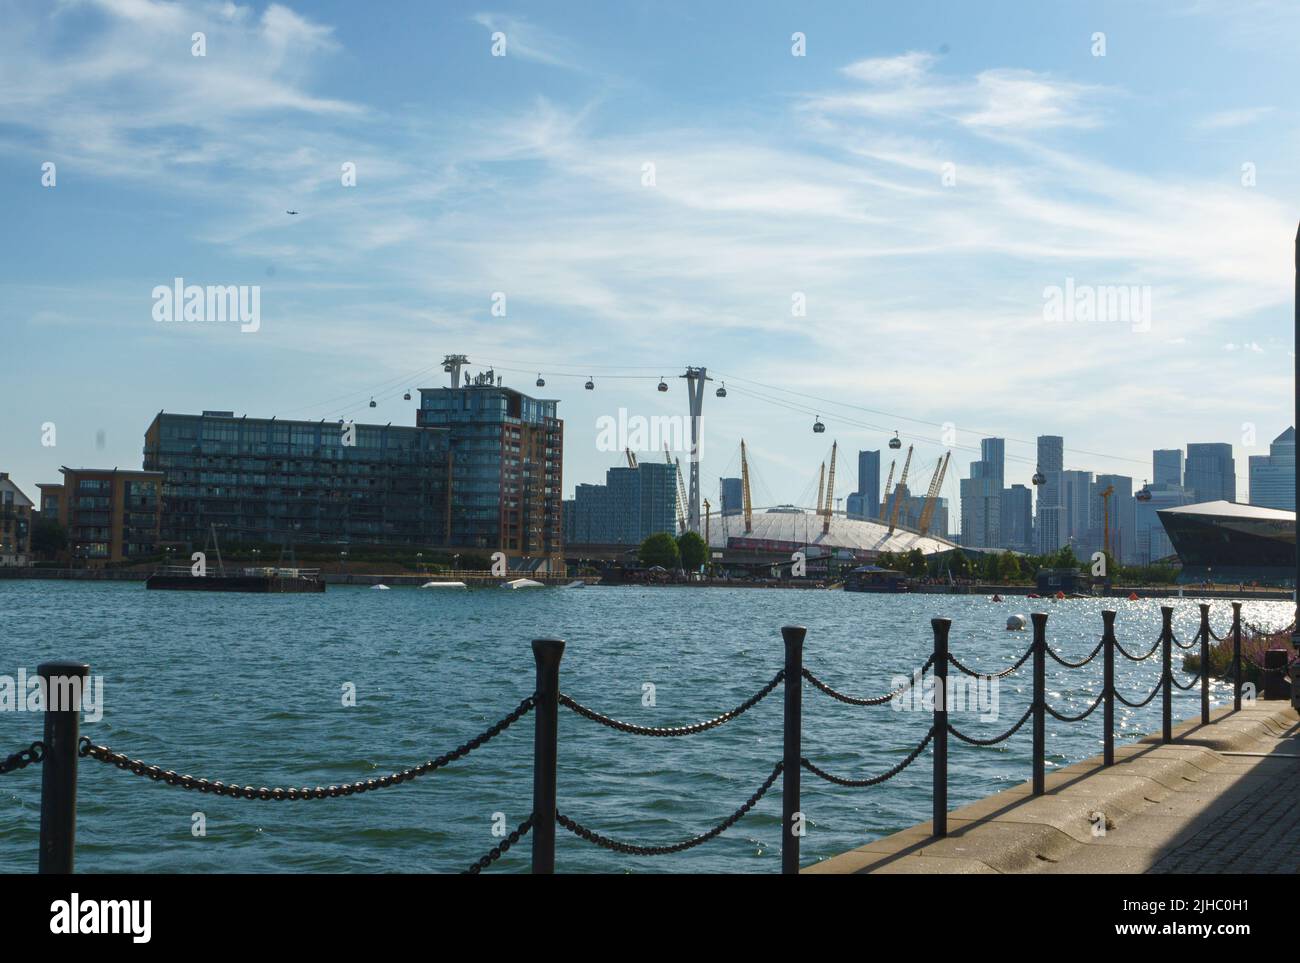 Una vista de la cúpula del milenio y los teleféricos desde el Royal Victoria Dock, Londres, Reino Unido Foto de stock